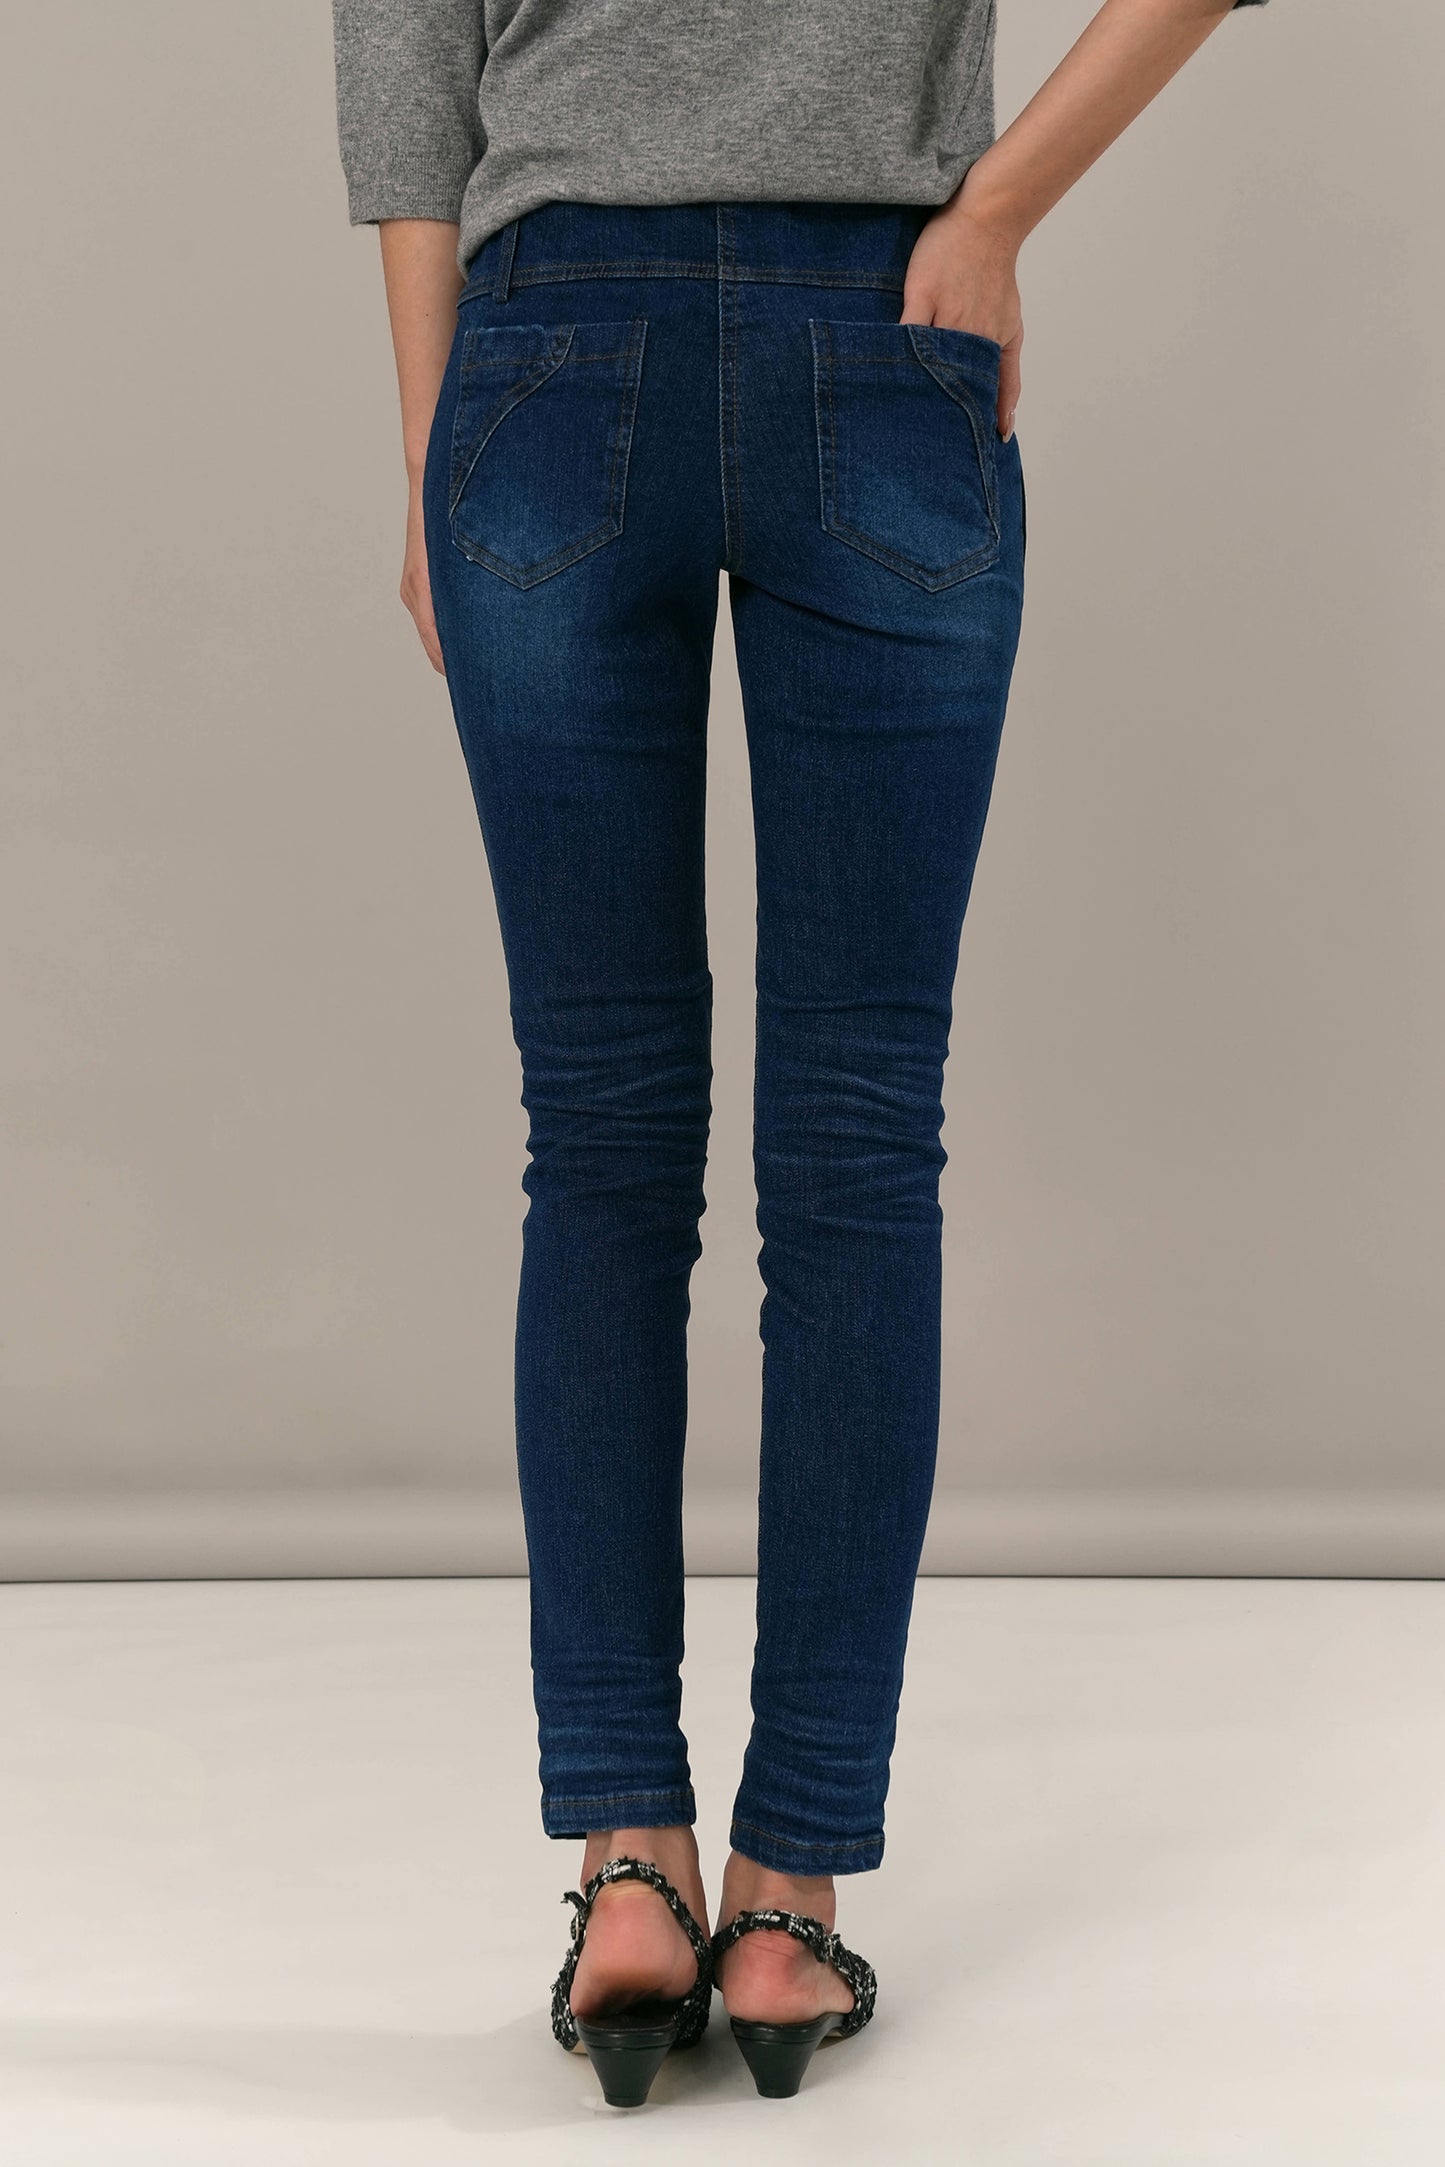 althea-skinny-jeans-deep-blue